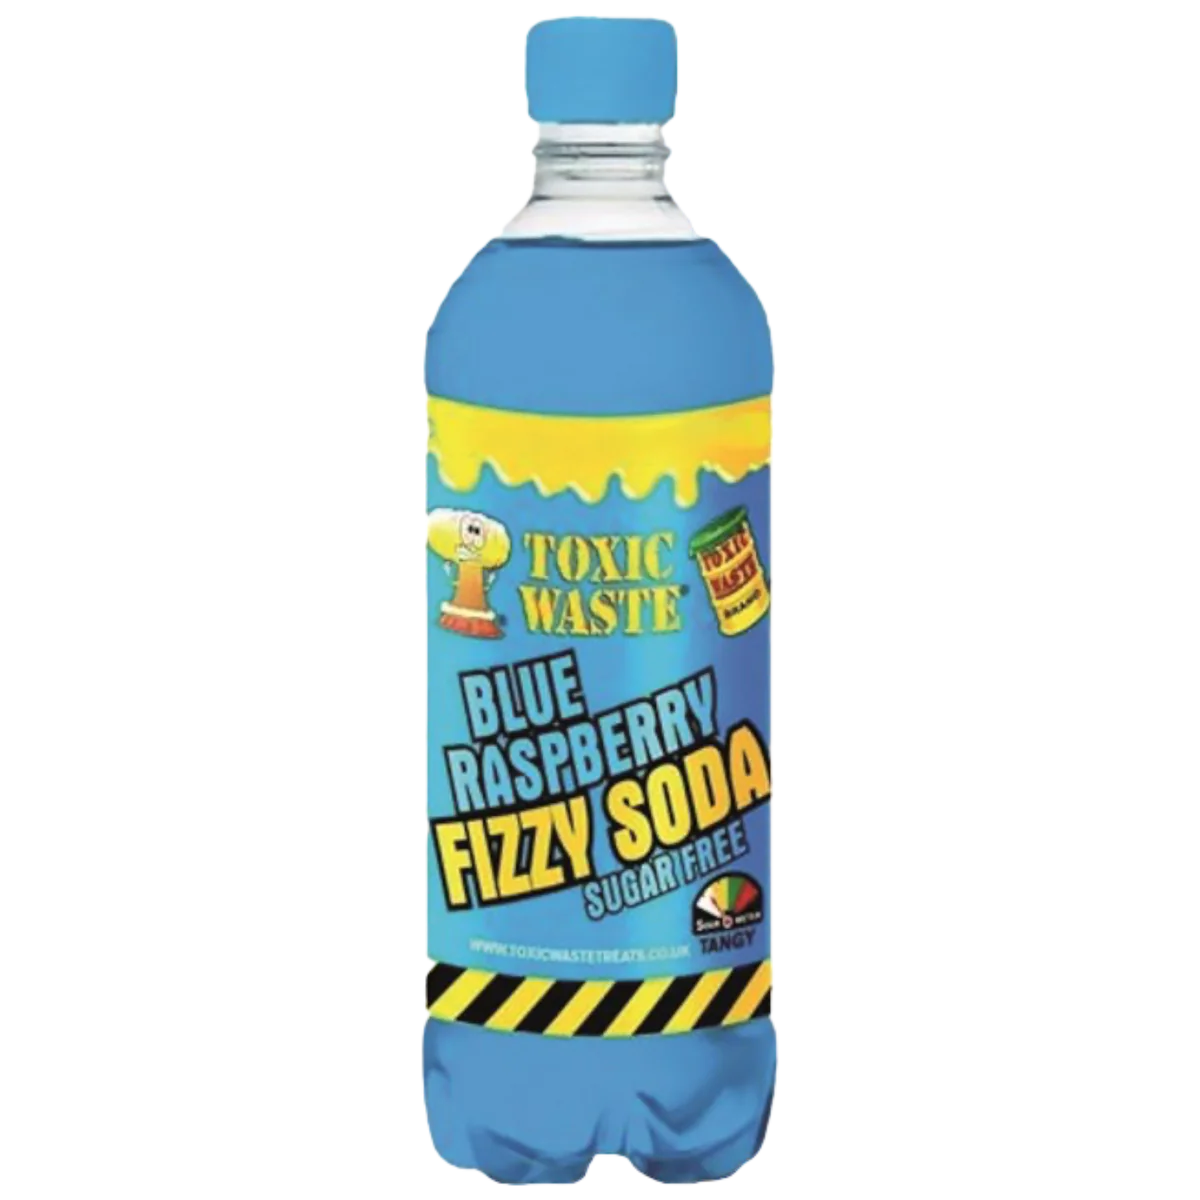 Toxic Waste Blue Raspberry Fizzy Soda 500ml (UK)